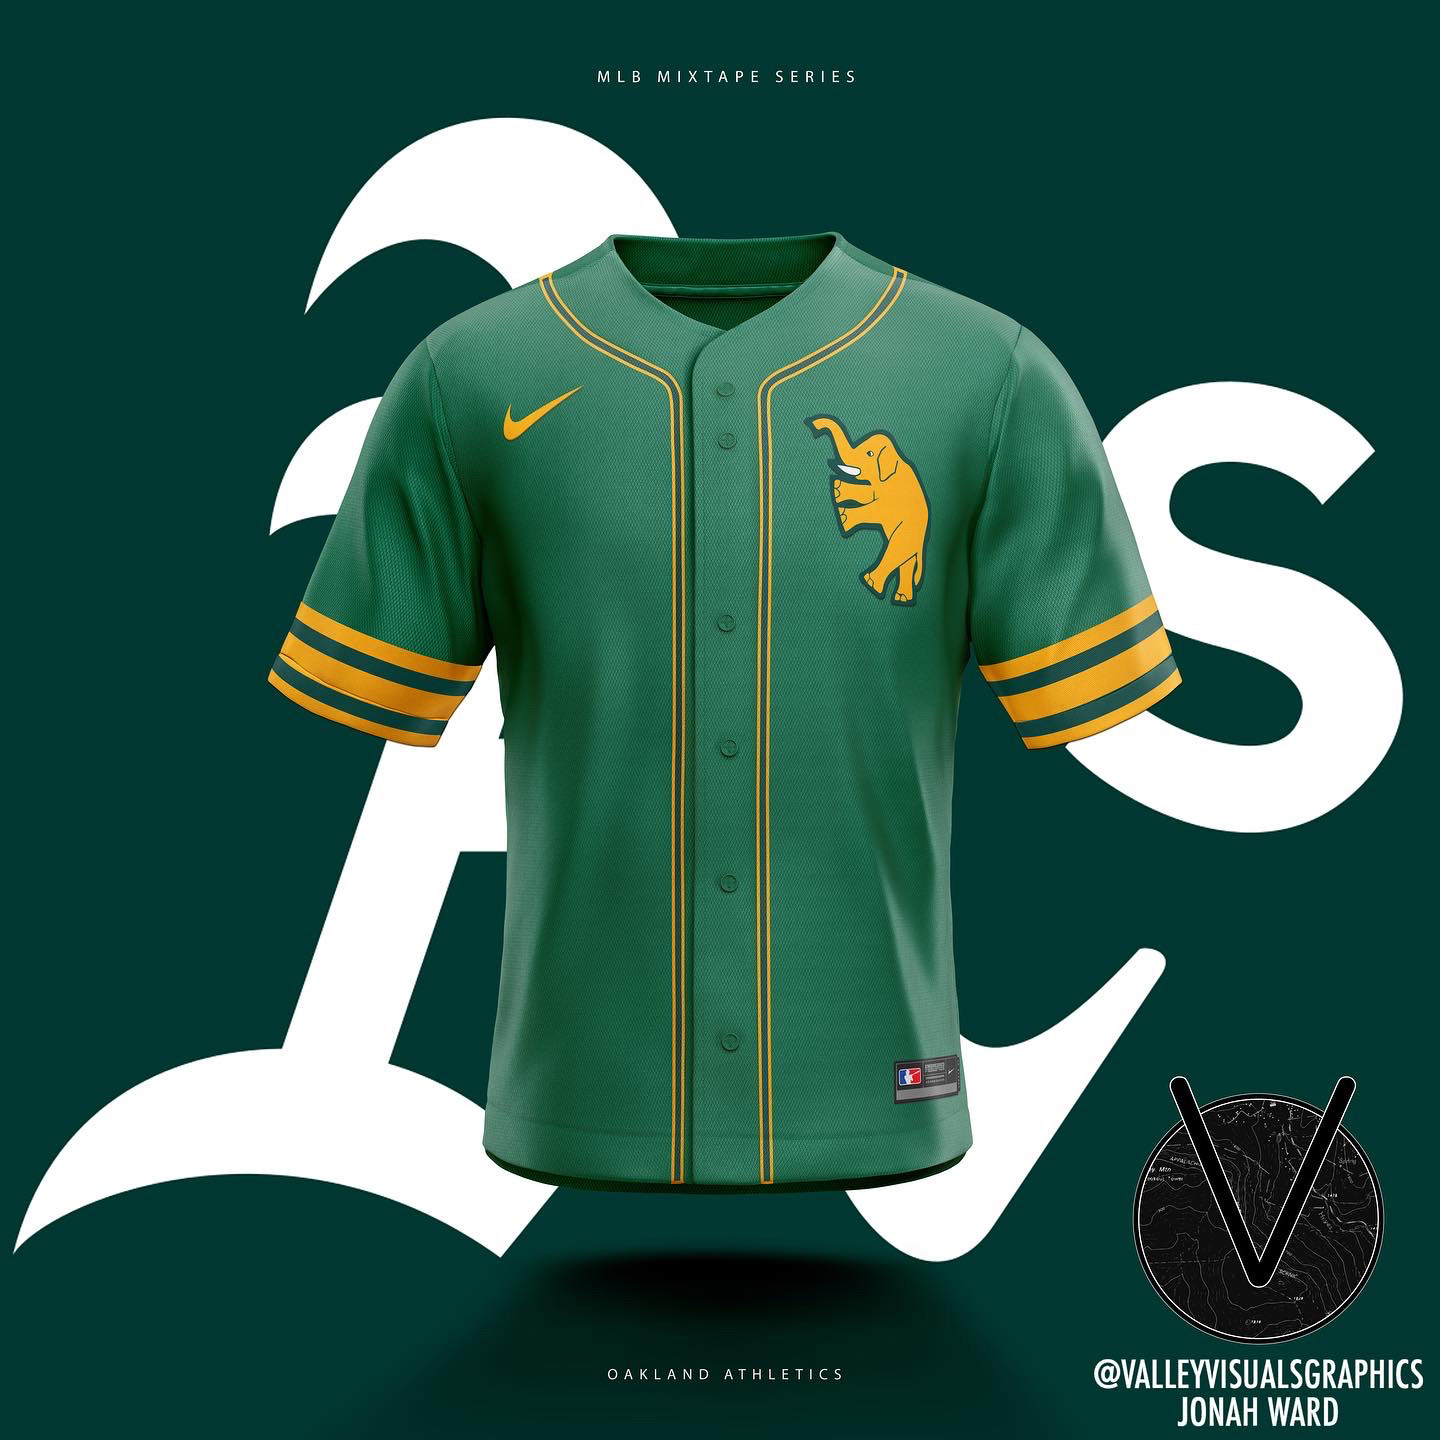 saltshaker91 posted to Instagram: Atlanta Braves baseball jersey concept  design made by @al4vt_design using our baseball jersey builder template.  #atlantabrave…